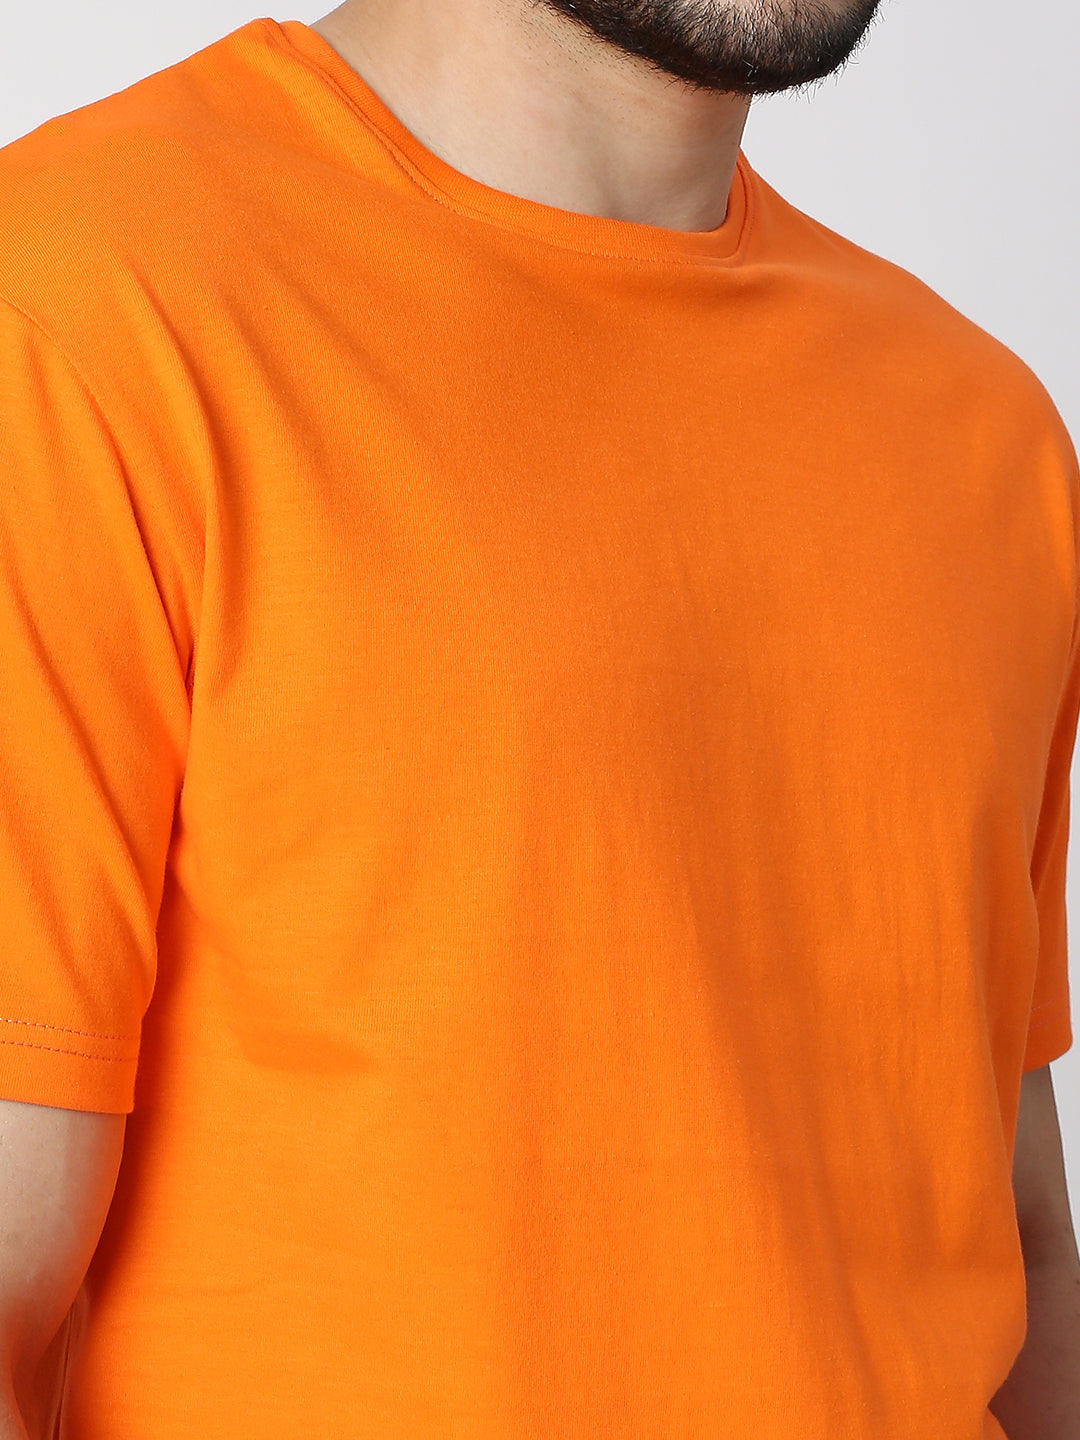 Buy Blamblack Solid Orange Half Sleeved T-shirt